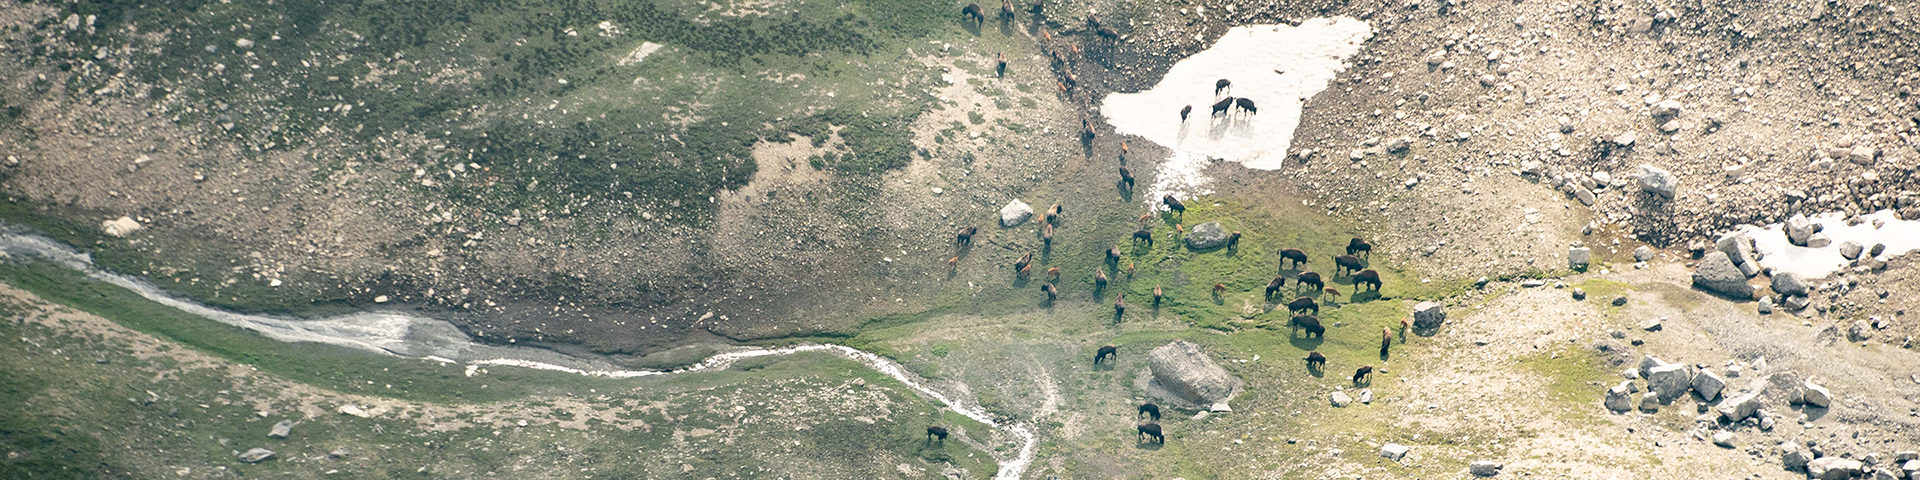 free roaming bison